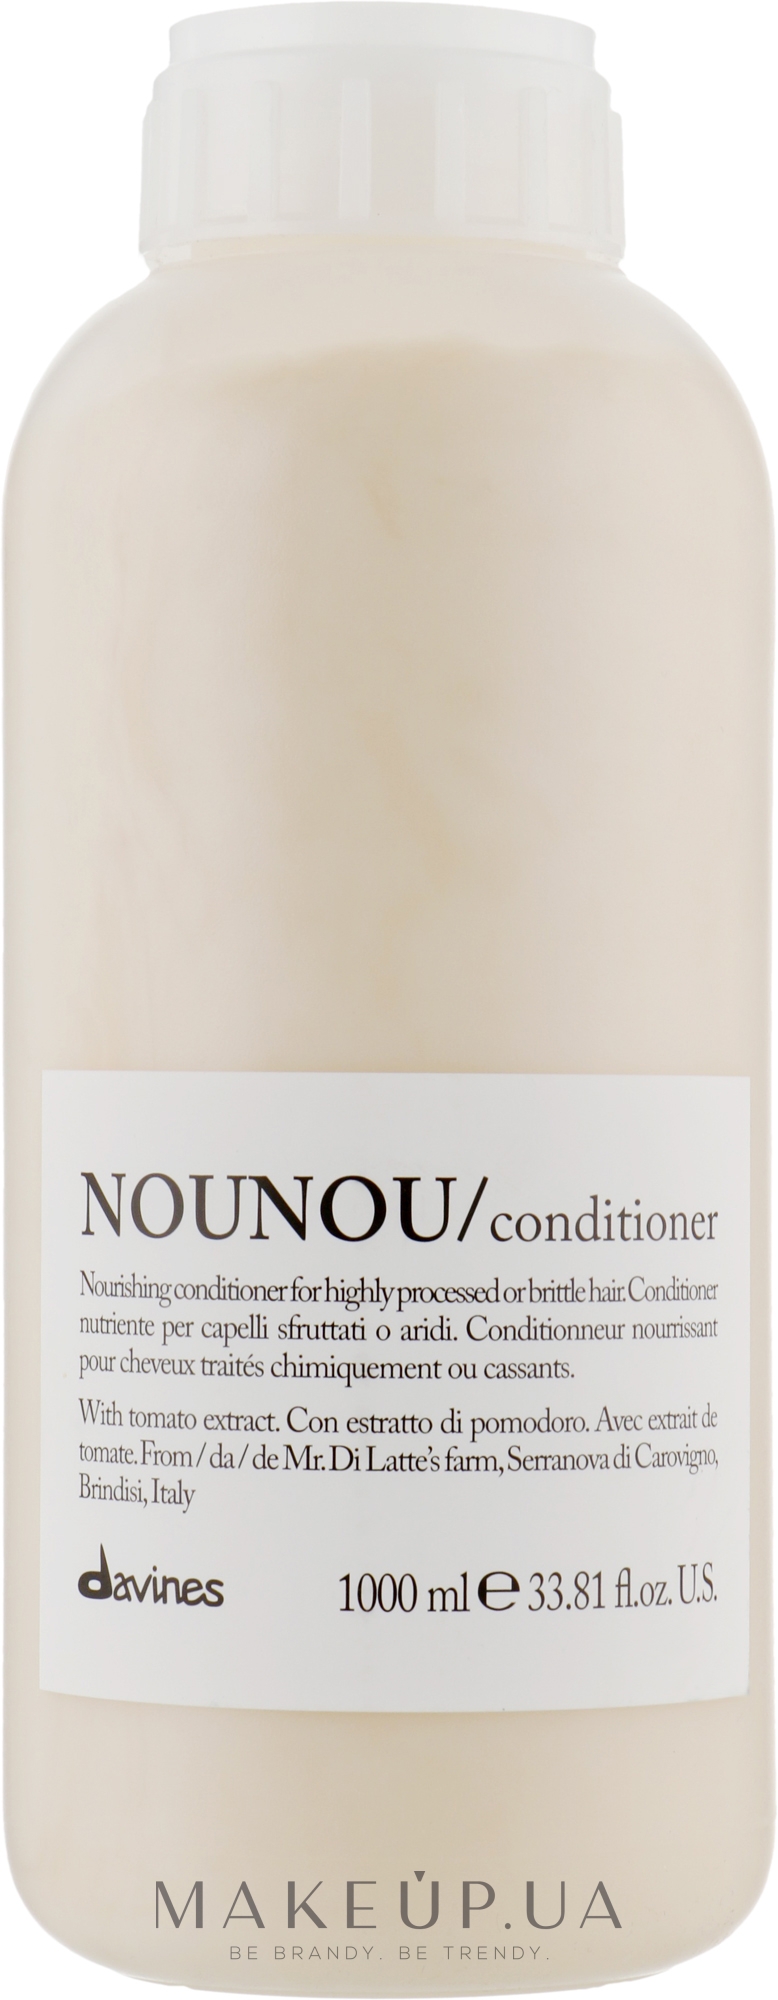 Питательный кондиционер для уплотнения ломких и поврежденных волос - Davines Nourishing Nounou Conditioner  — фото 1000ml